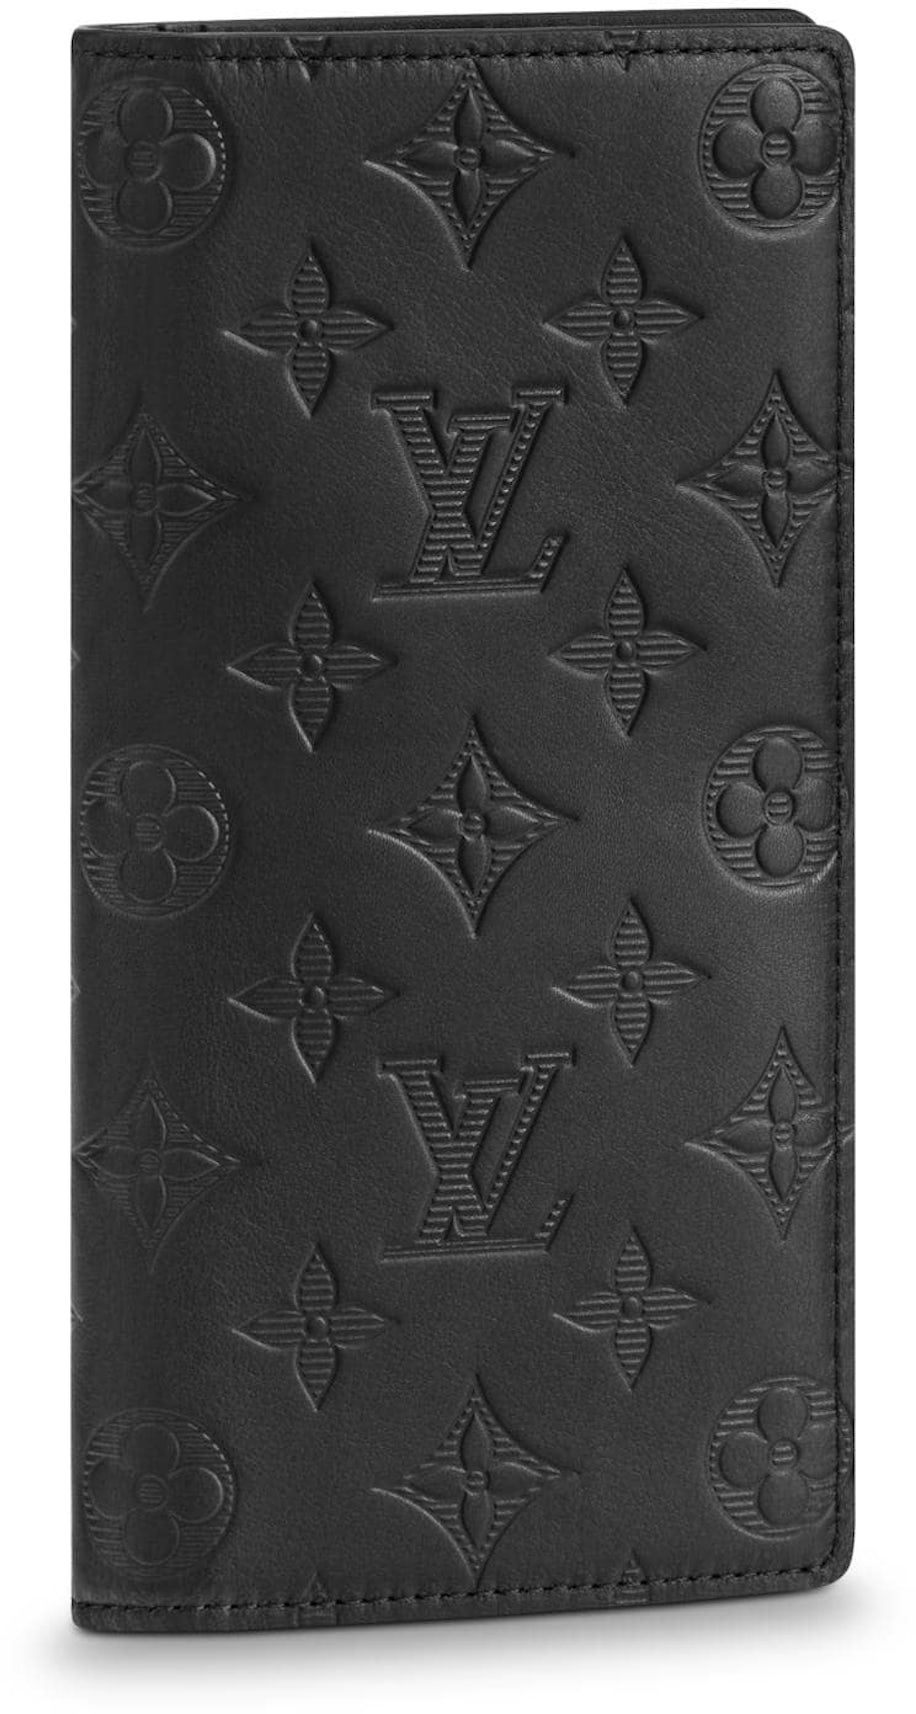 Branded Republic - Dompet Louis Vuitton Brazza Monogram Clouds Wallet